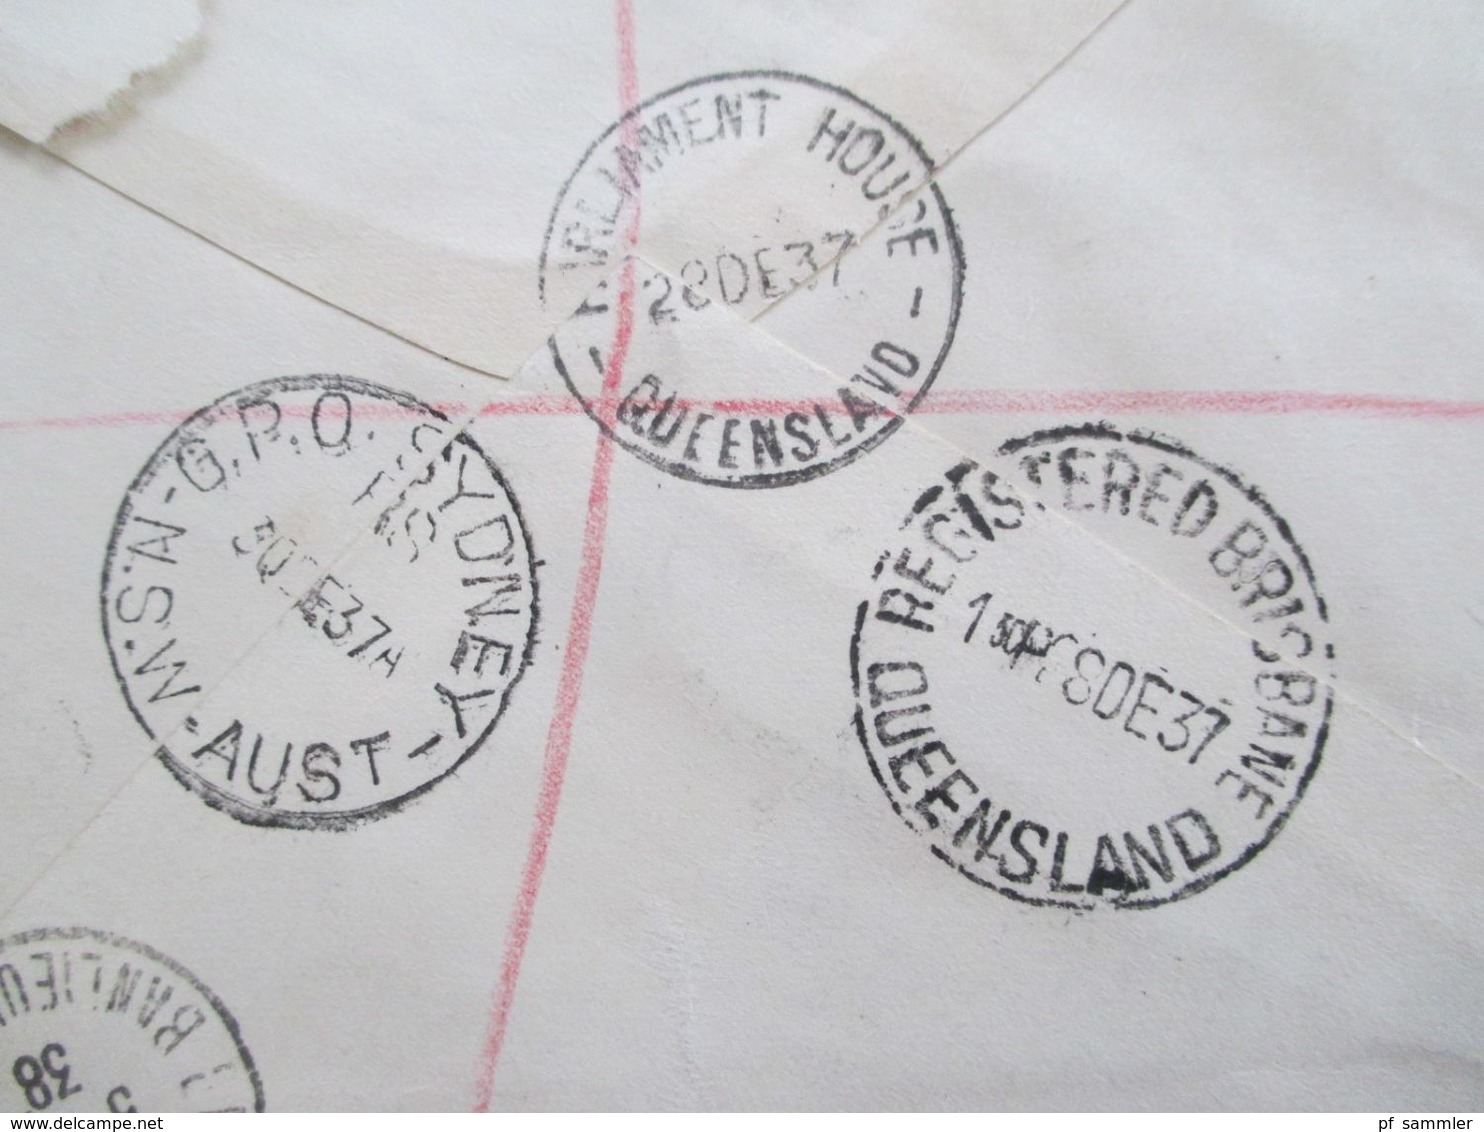 Australien 1937 Einschreiben Parliament House Brisbane Queensland Registered Nach Frankreich Tückseitig 4 Stempel - Covers & Documents